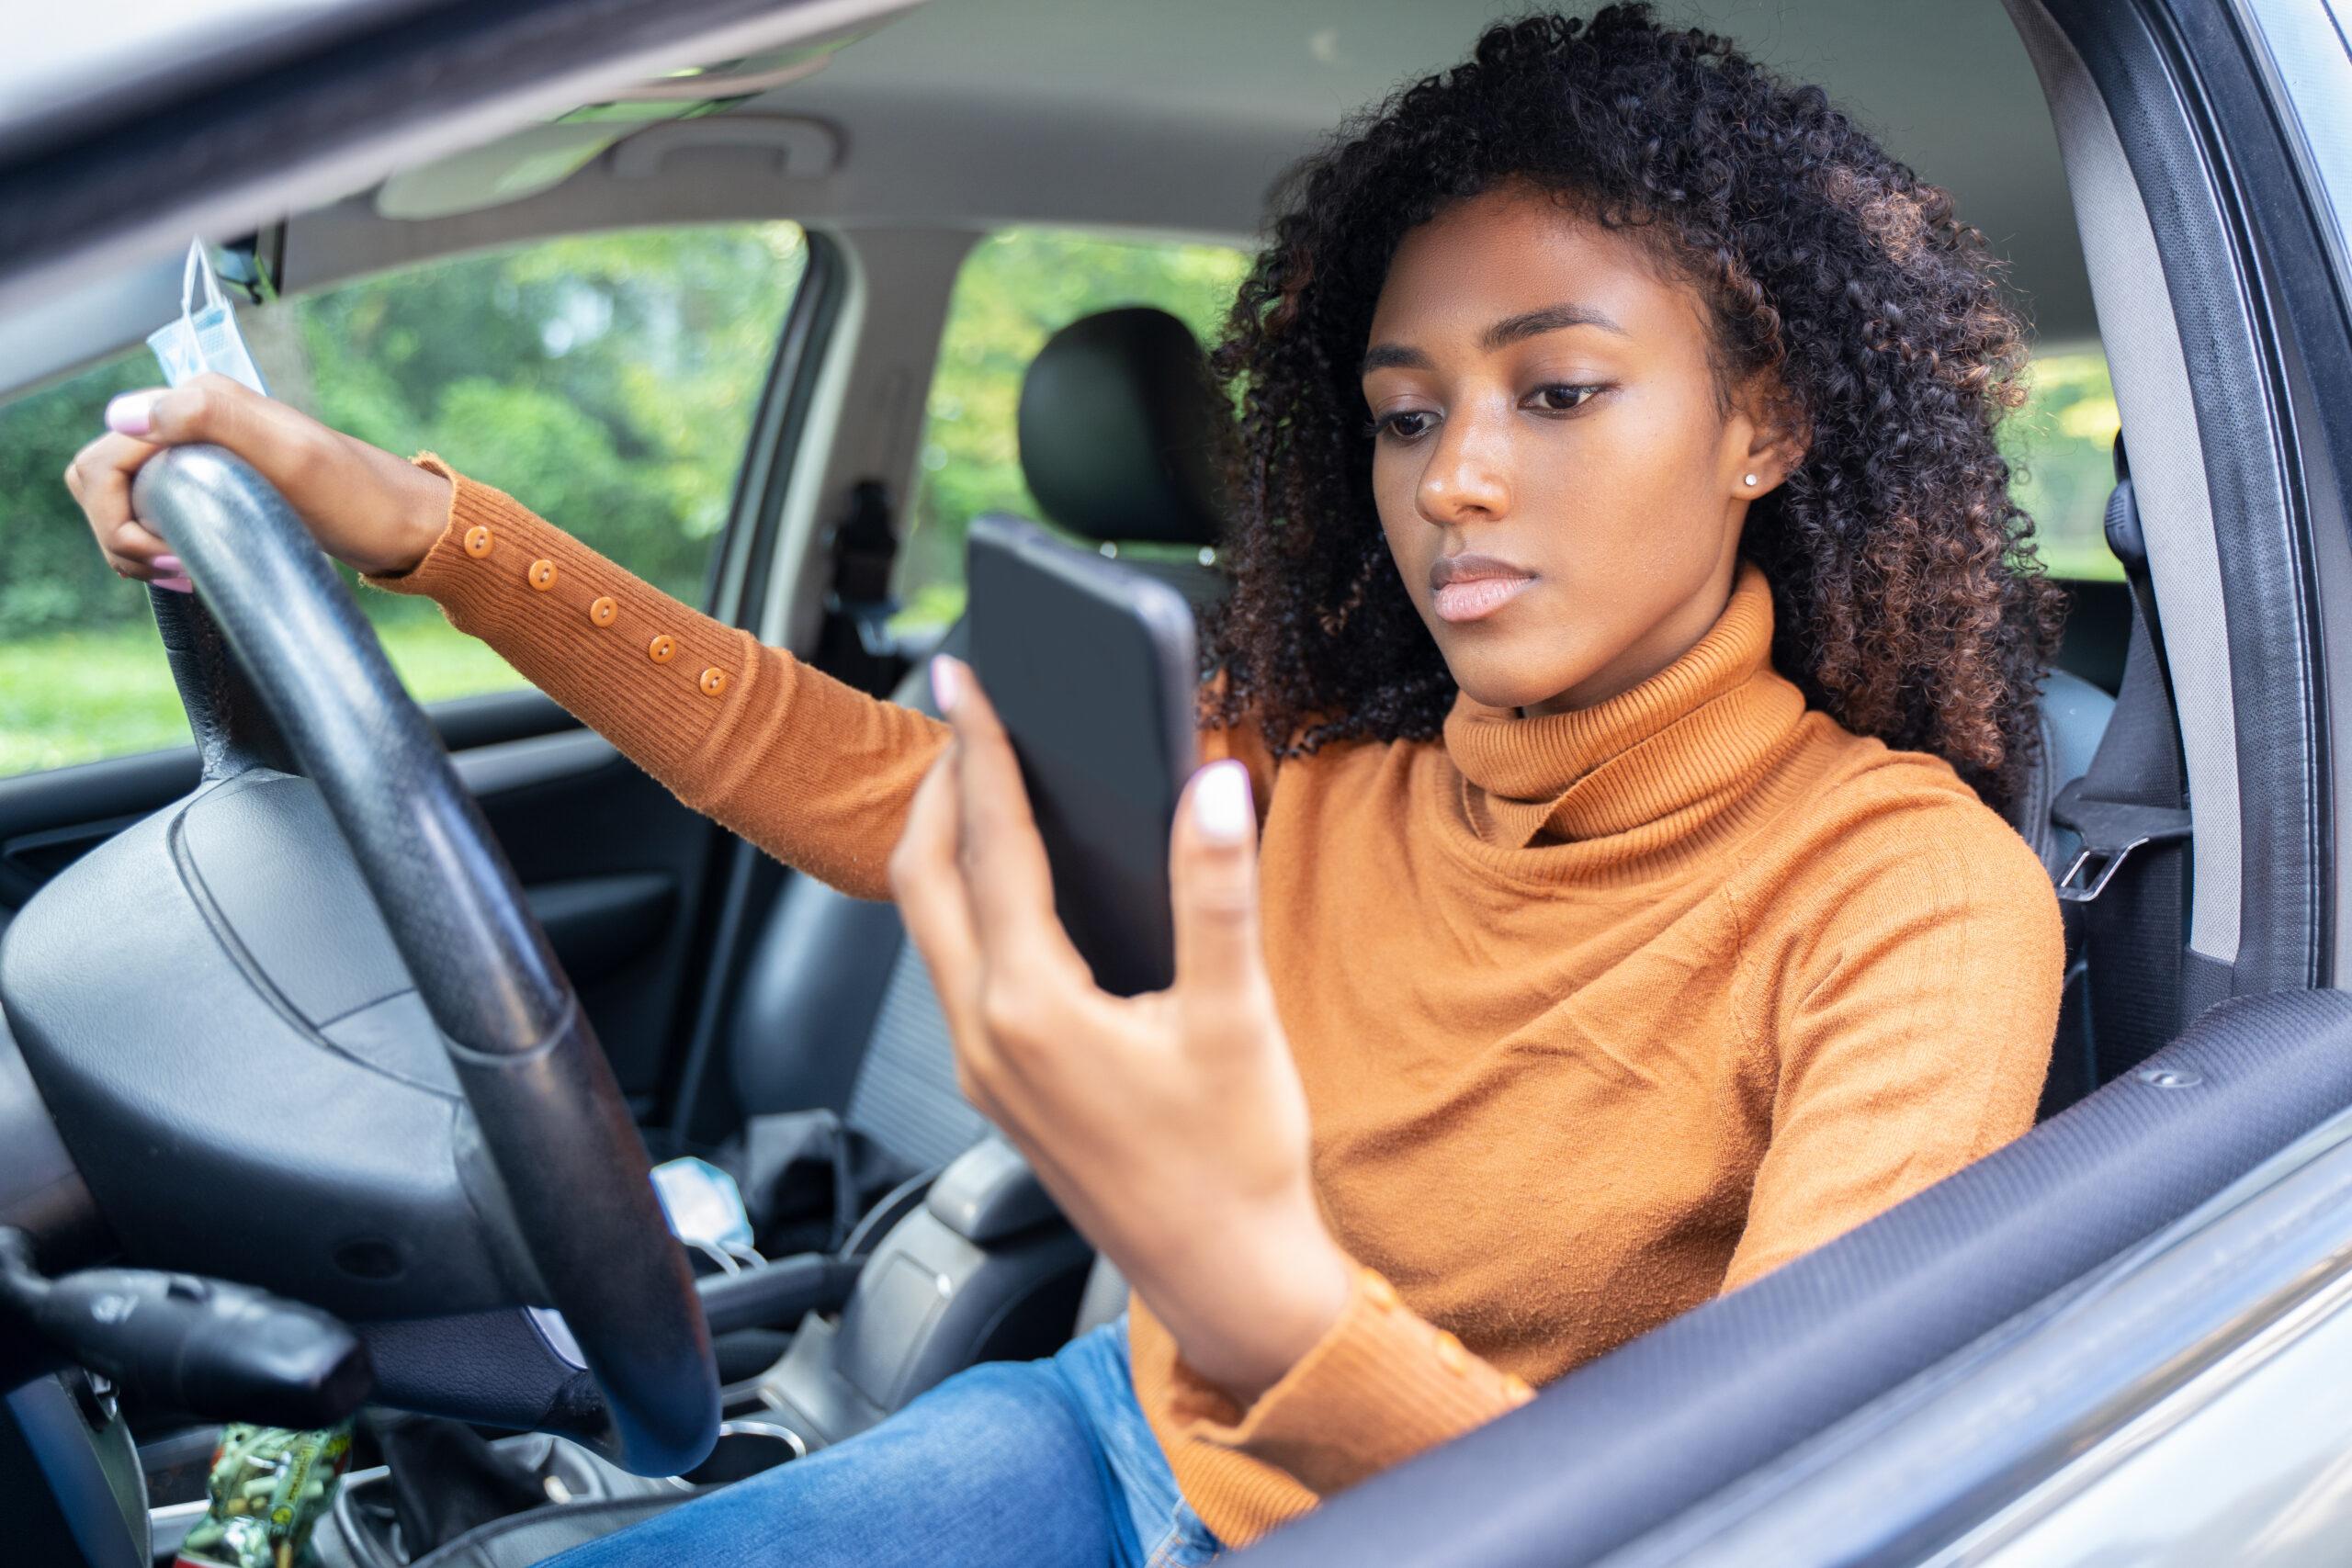 Mujer conduciendo un coche distraída con su teléfono móvil